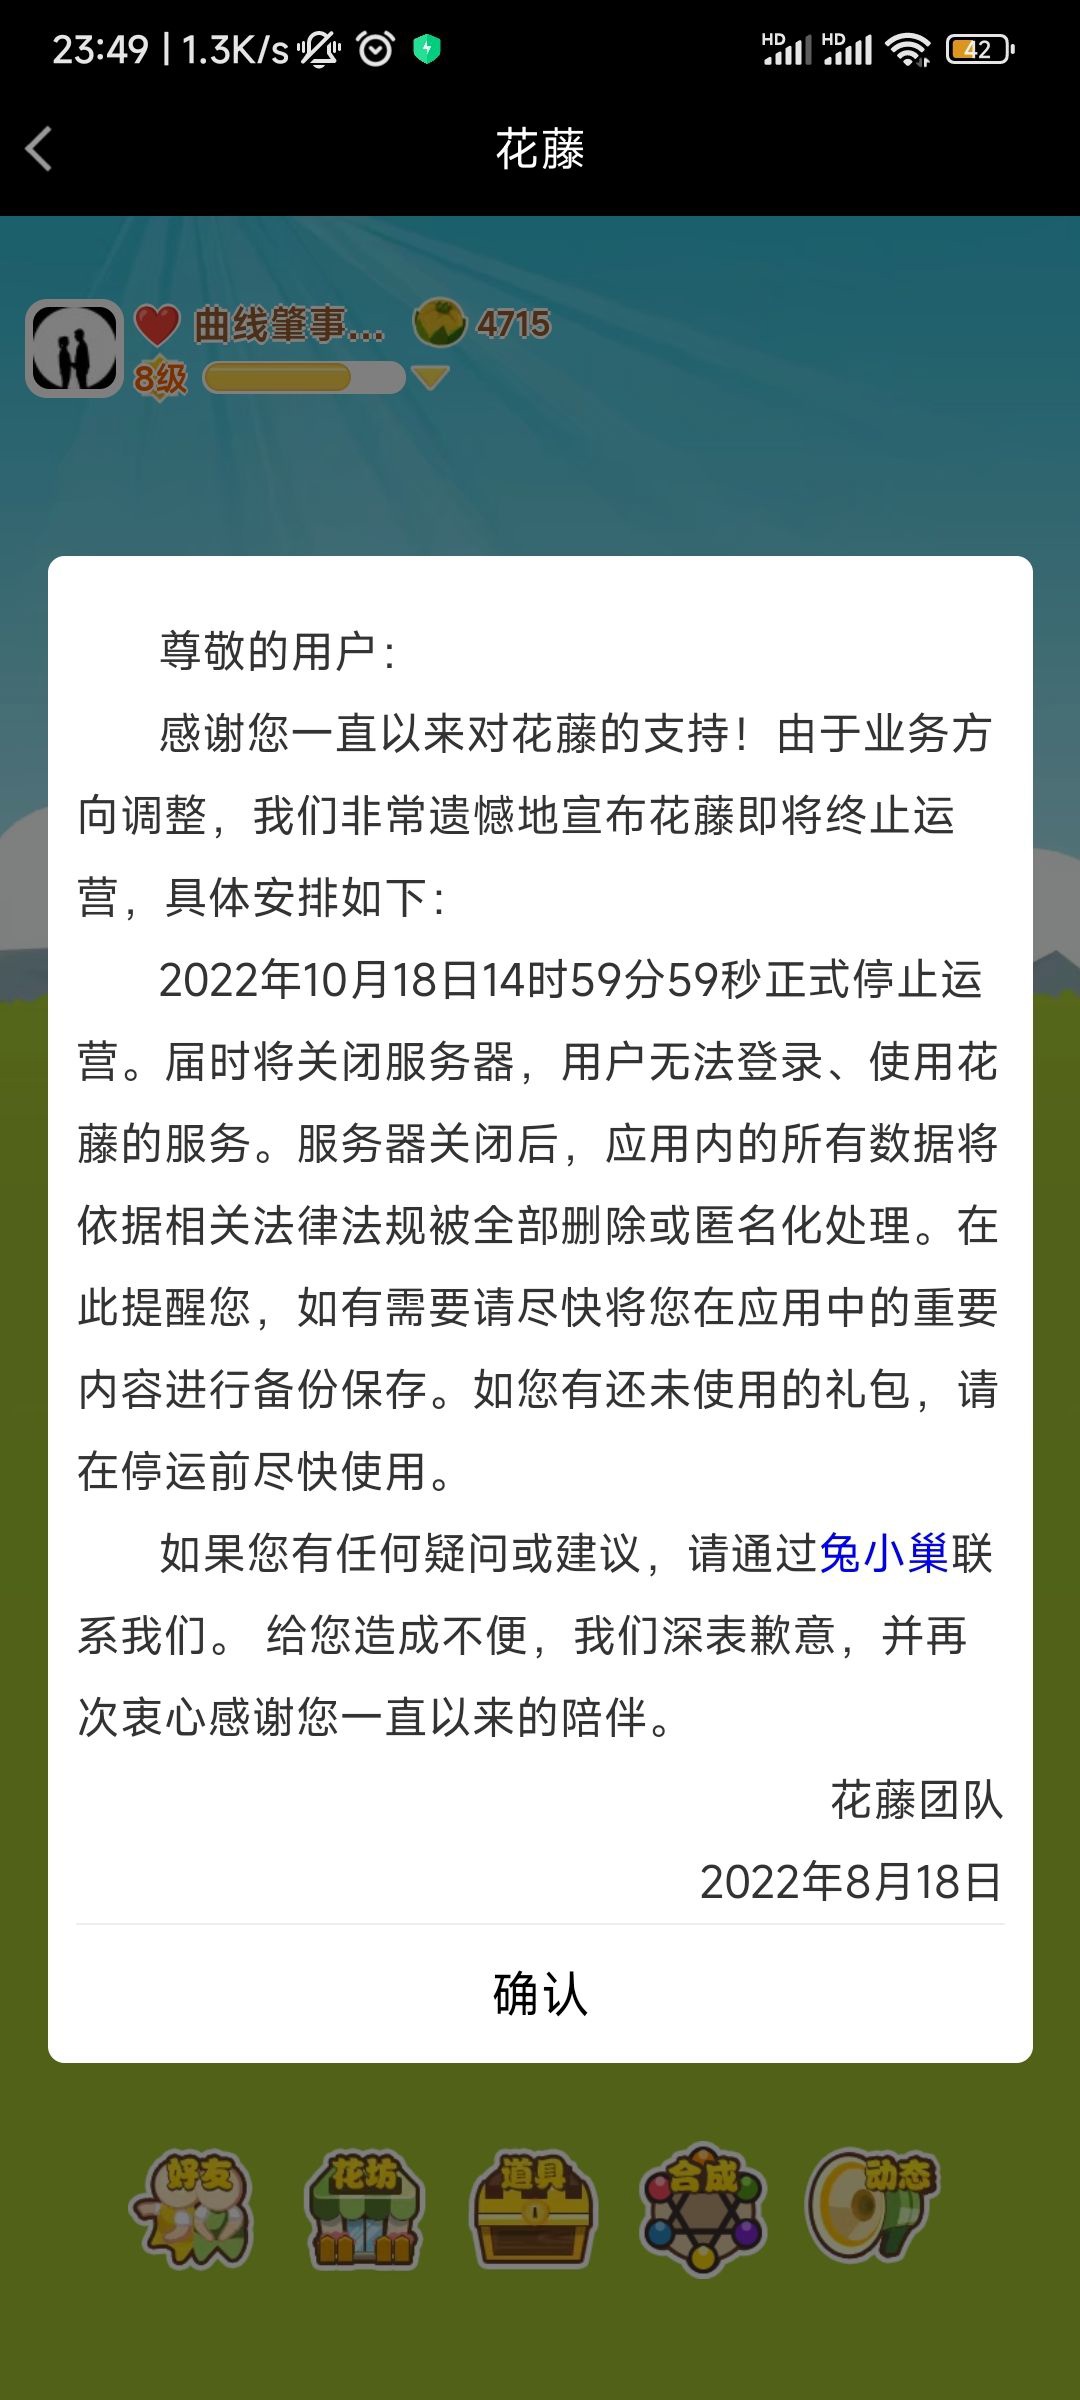 腾讯 QQ 空间“花藤”将于 10 月 18 日停止运营